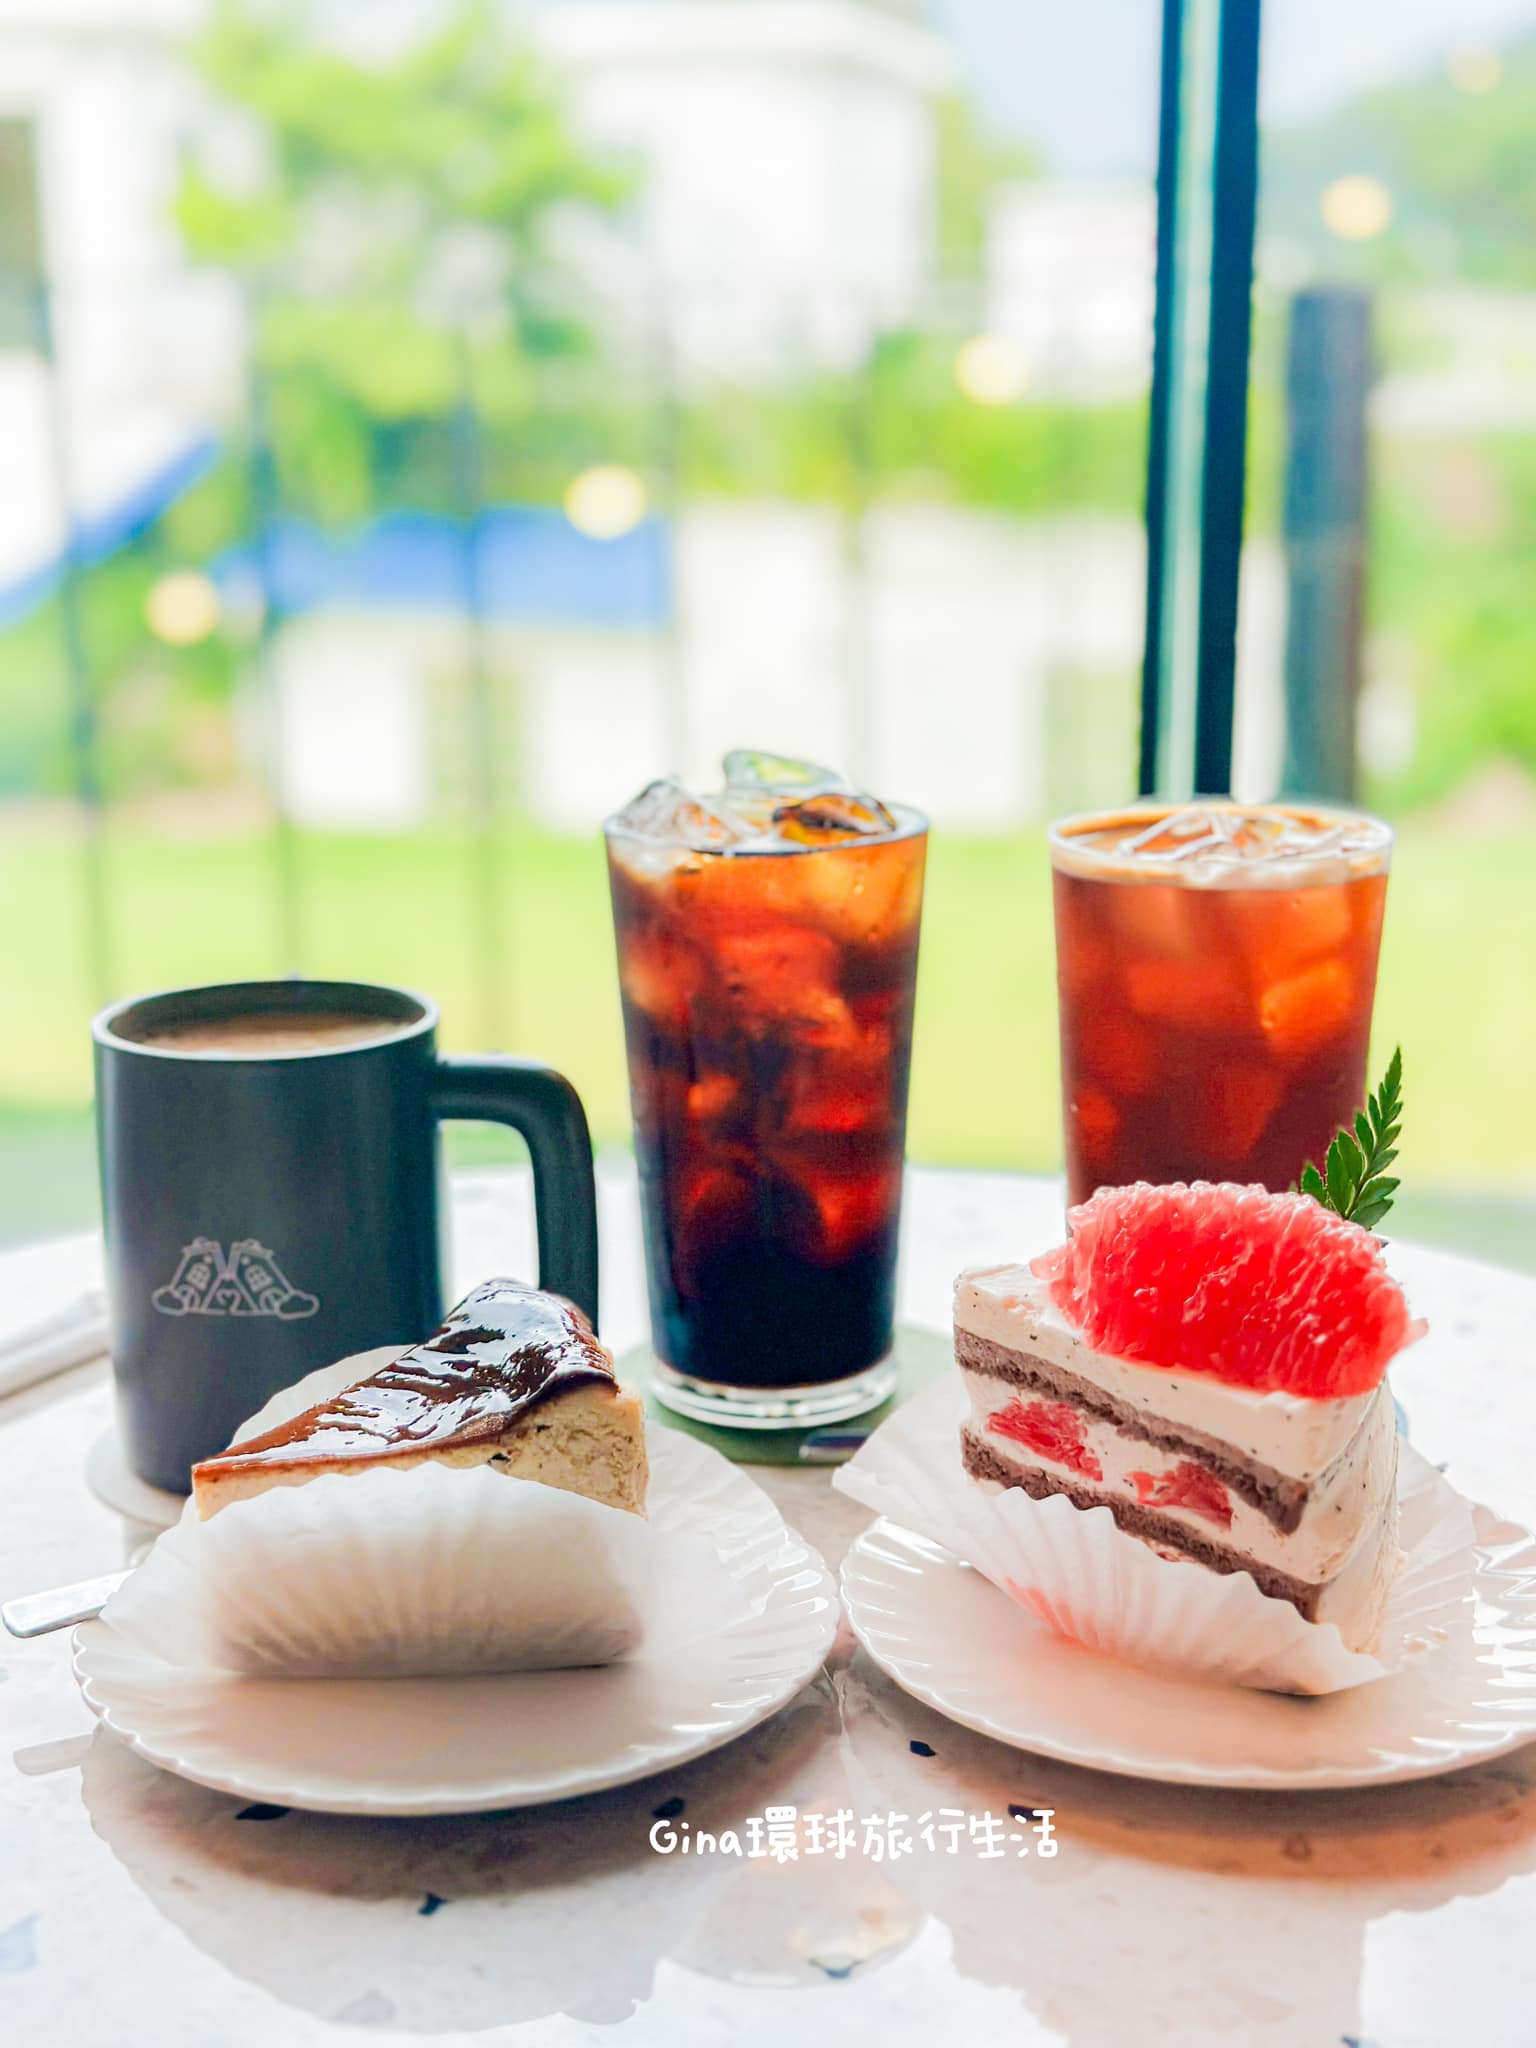 【江華島傾斜咖啡廳】Amoene Cafe 可愛造型咖啡廳、仁川江華島景點 @GINA環球旅行生活